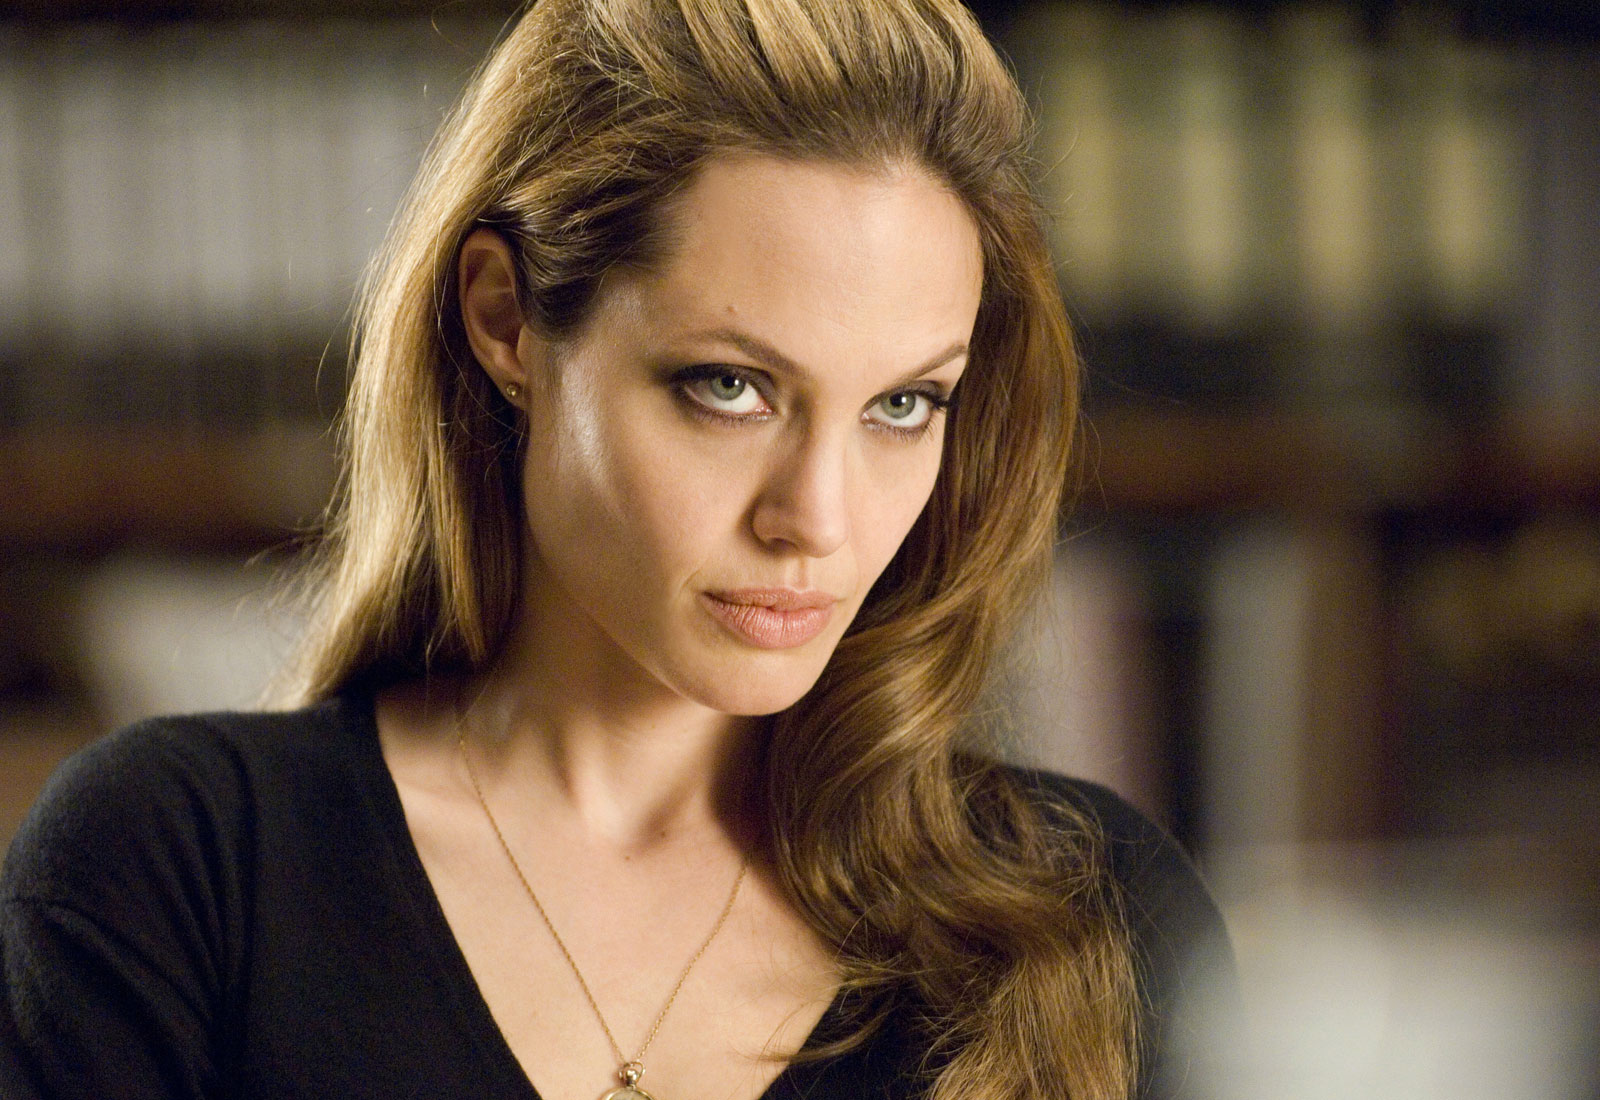 Os Eternos: O que esperar do filme da Marvel com Angelina Jolie